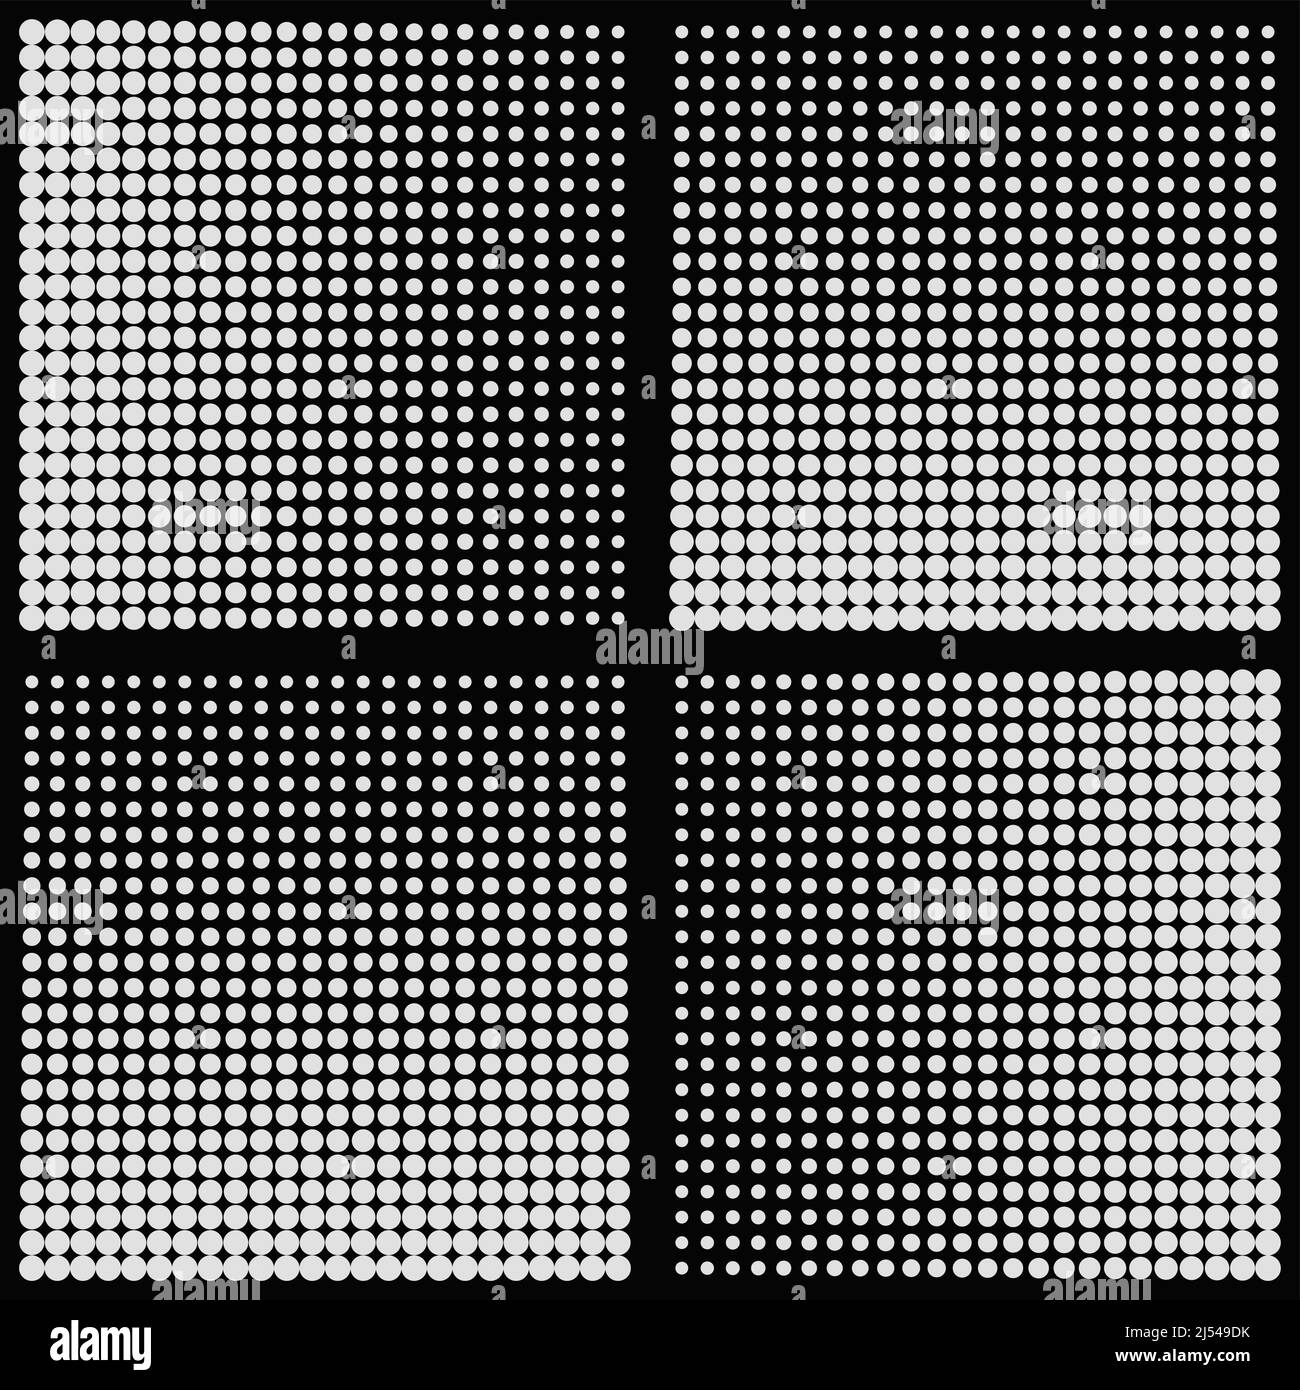 Abstrakte monochrome Vektorgrafiken mit digitalem Übergangseffekt. Futuristisches Muster im Brutalistischen Stil mit verzerrten geometrischen Formen. Stock Vektor